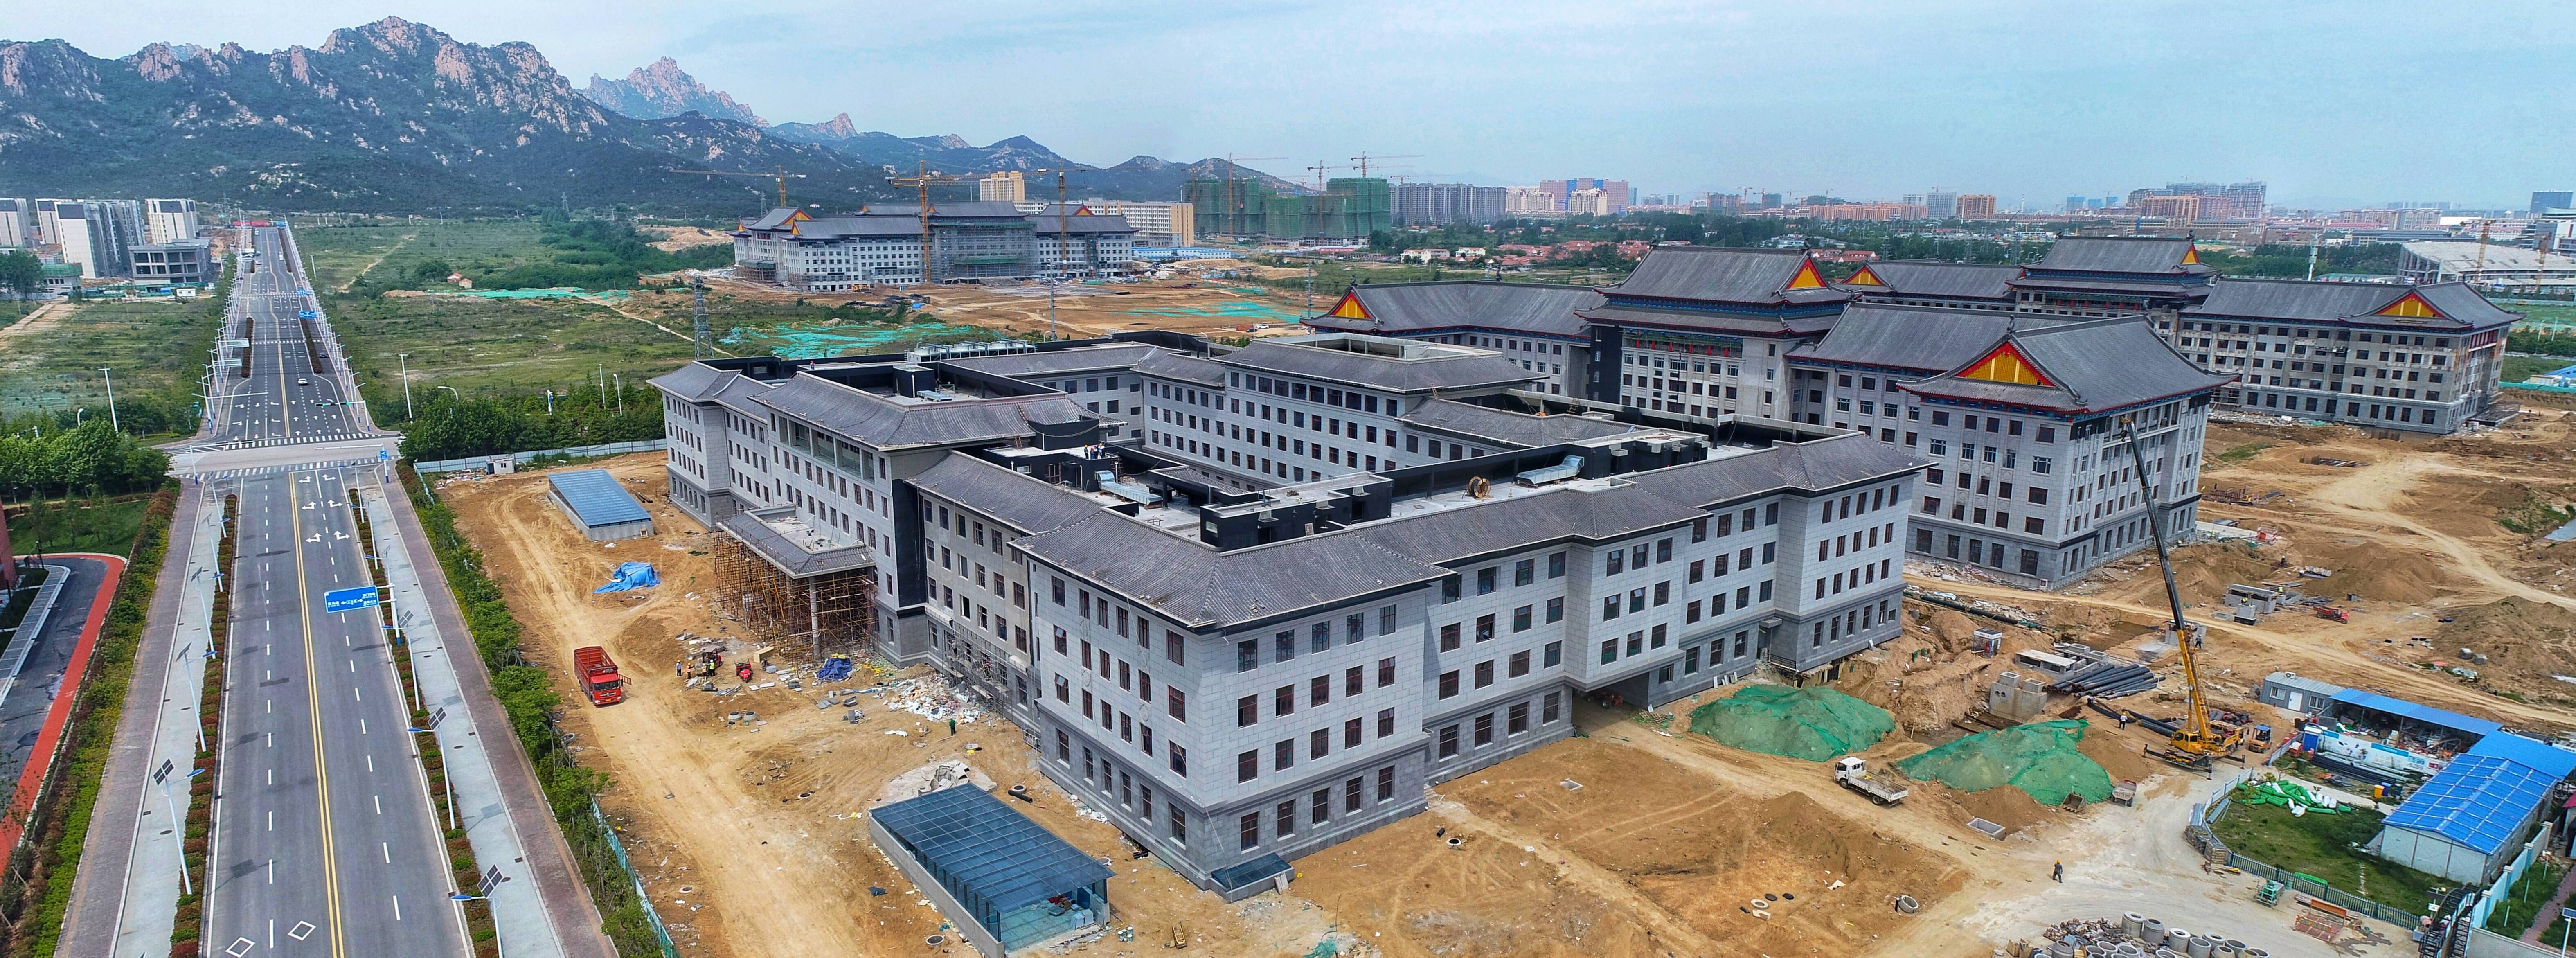 哈工程青岛创新发展基地6月底交付今年秋季首批招生1200人